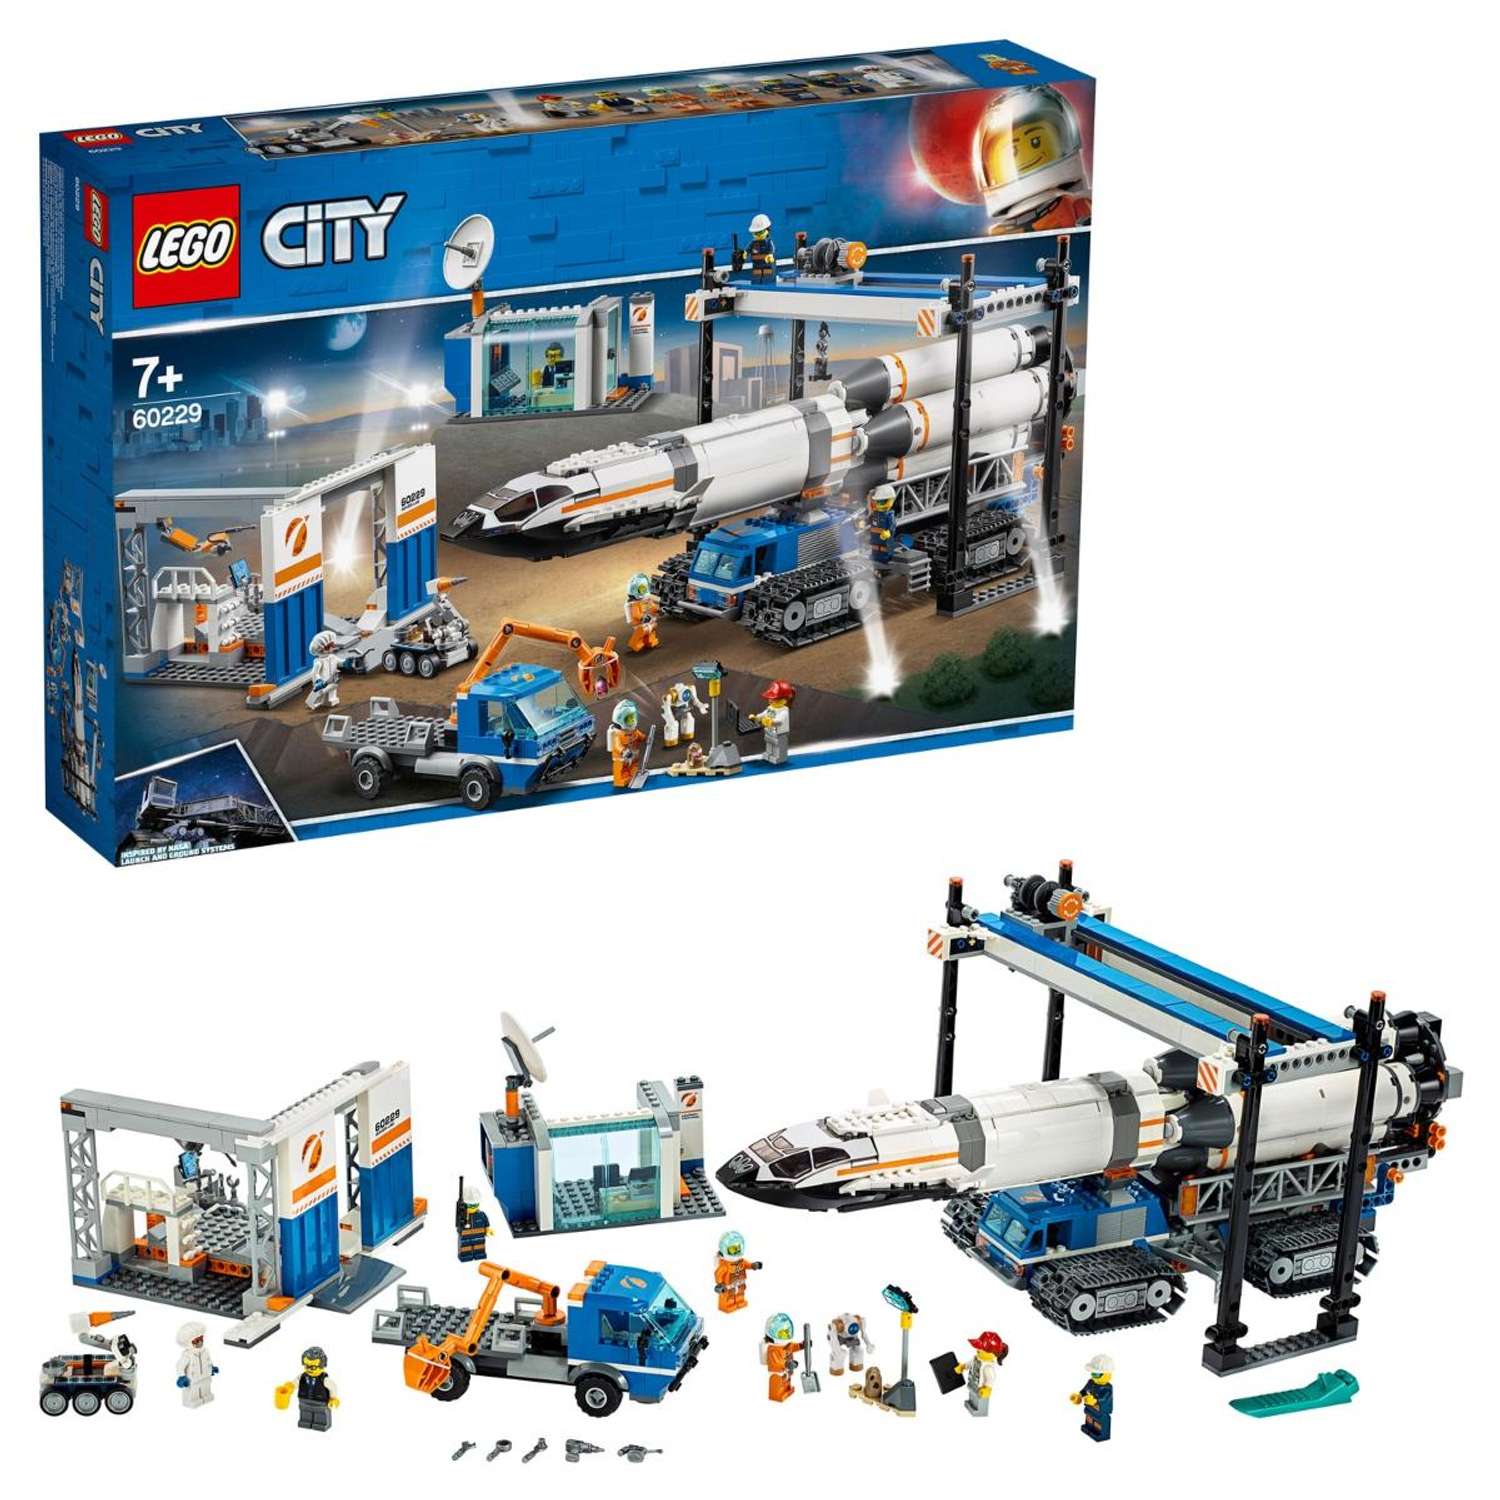 Конструктор LEGO City Space Port Площадка для сборки и транспорт для перевозки ракеты 60229 - фото 1